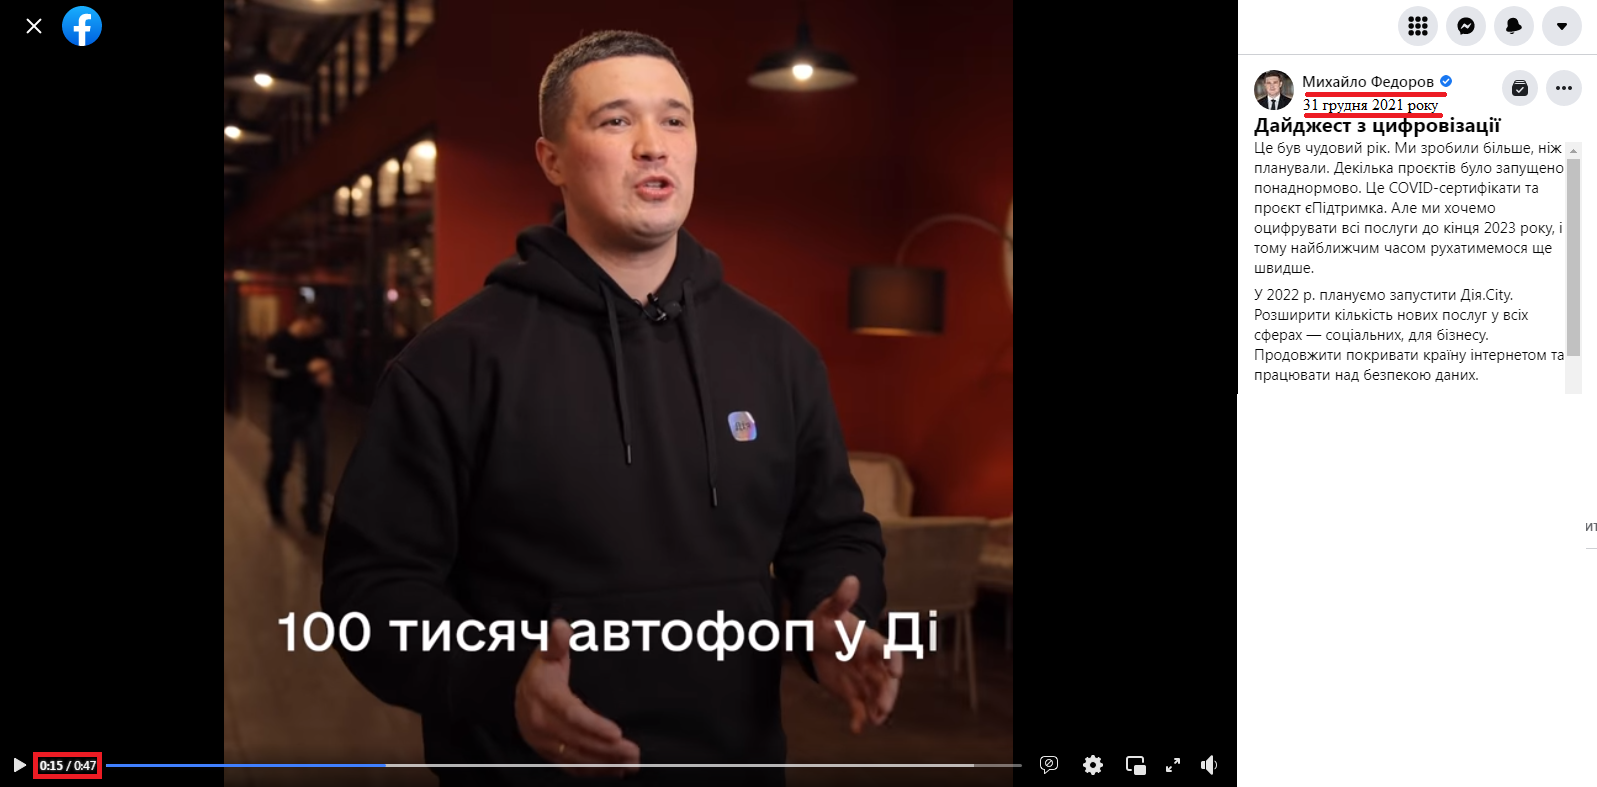 https://www.facebook.com/mykhailofedorov.com.ua/videos/1759893504207374/